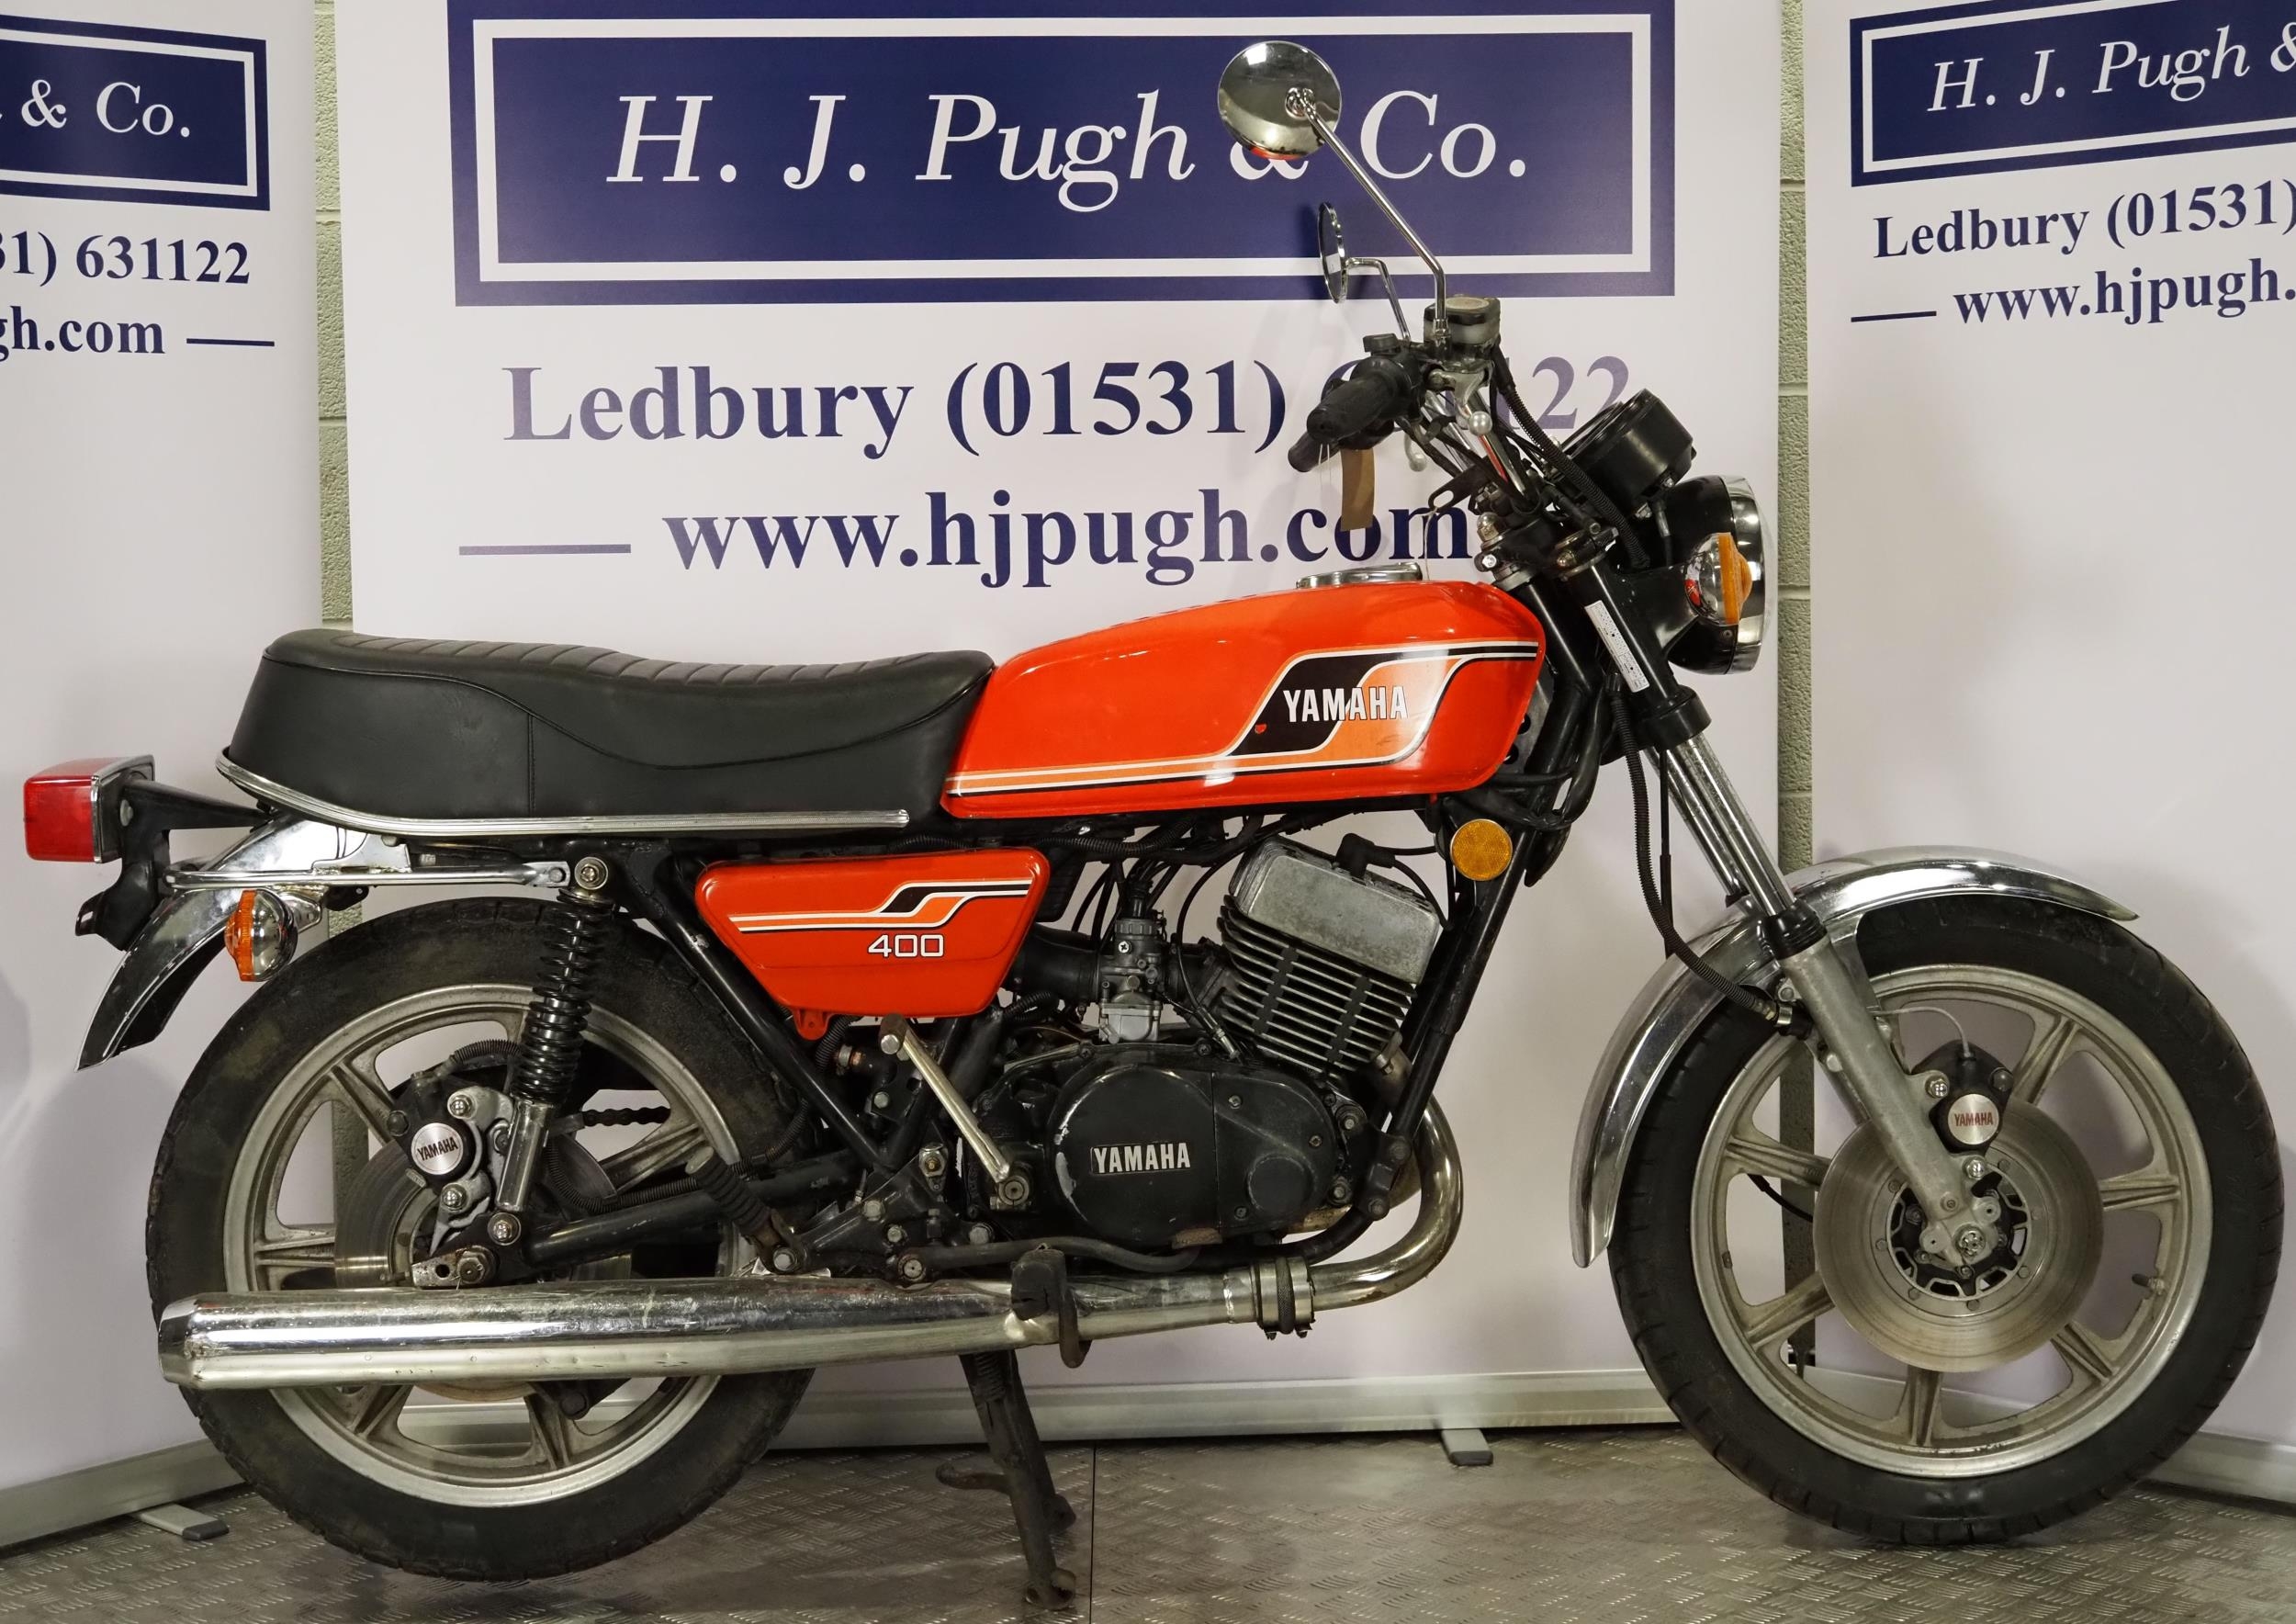 Yamaha RD400 motorcycle. 1976. 399cc. Frame No. 1A1008827 Engine No. 1A1-308468 Runs and rides.